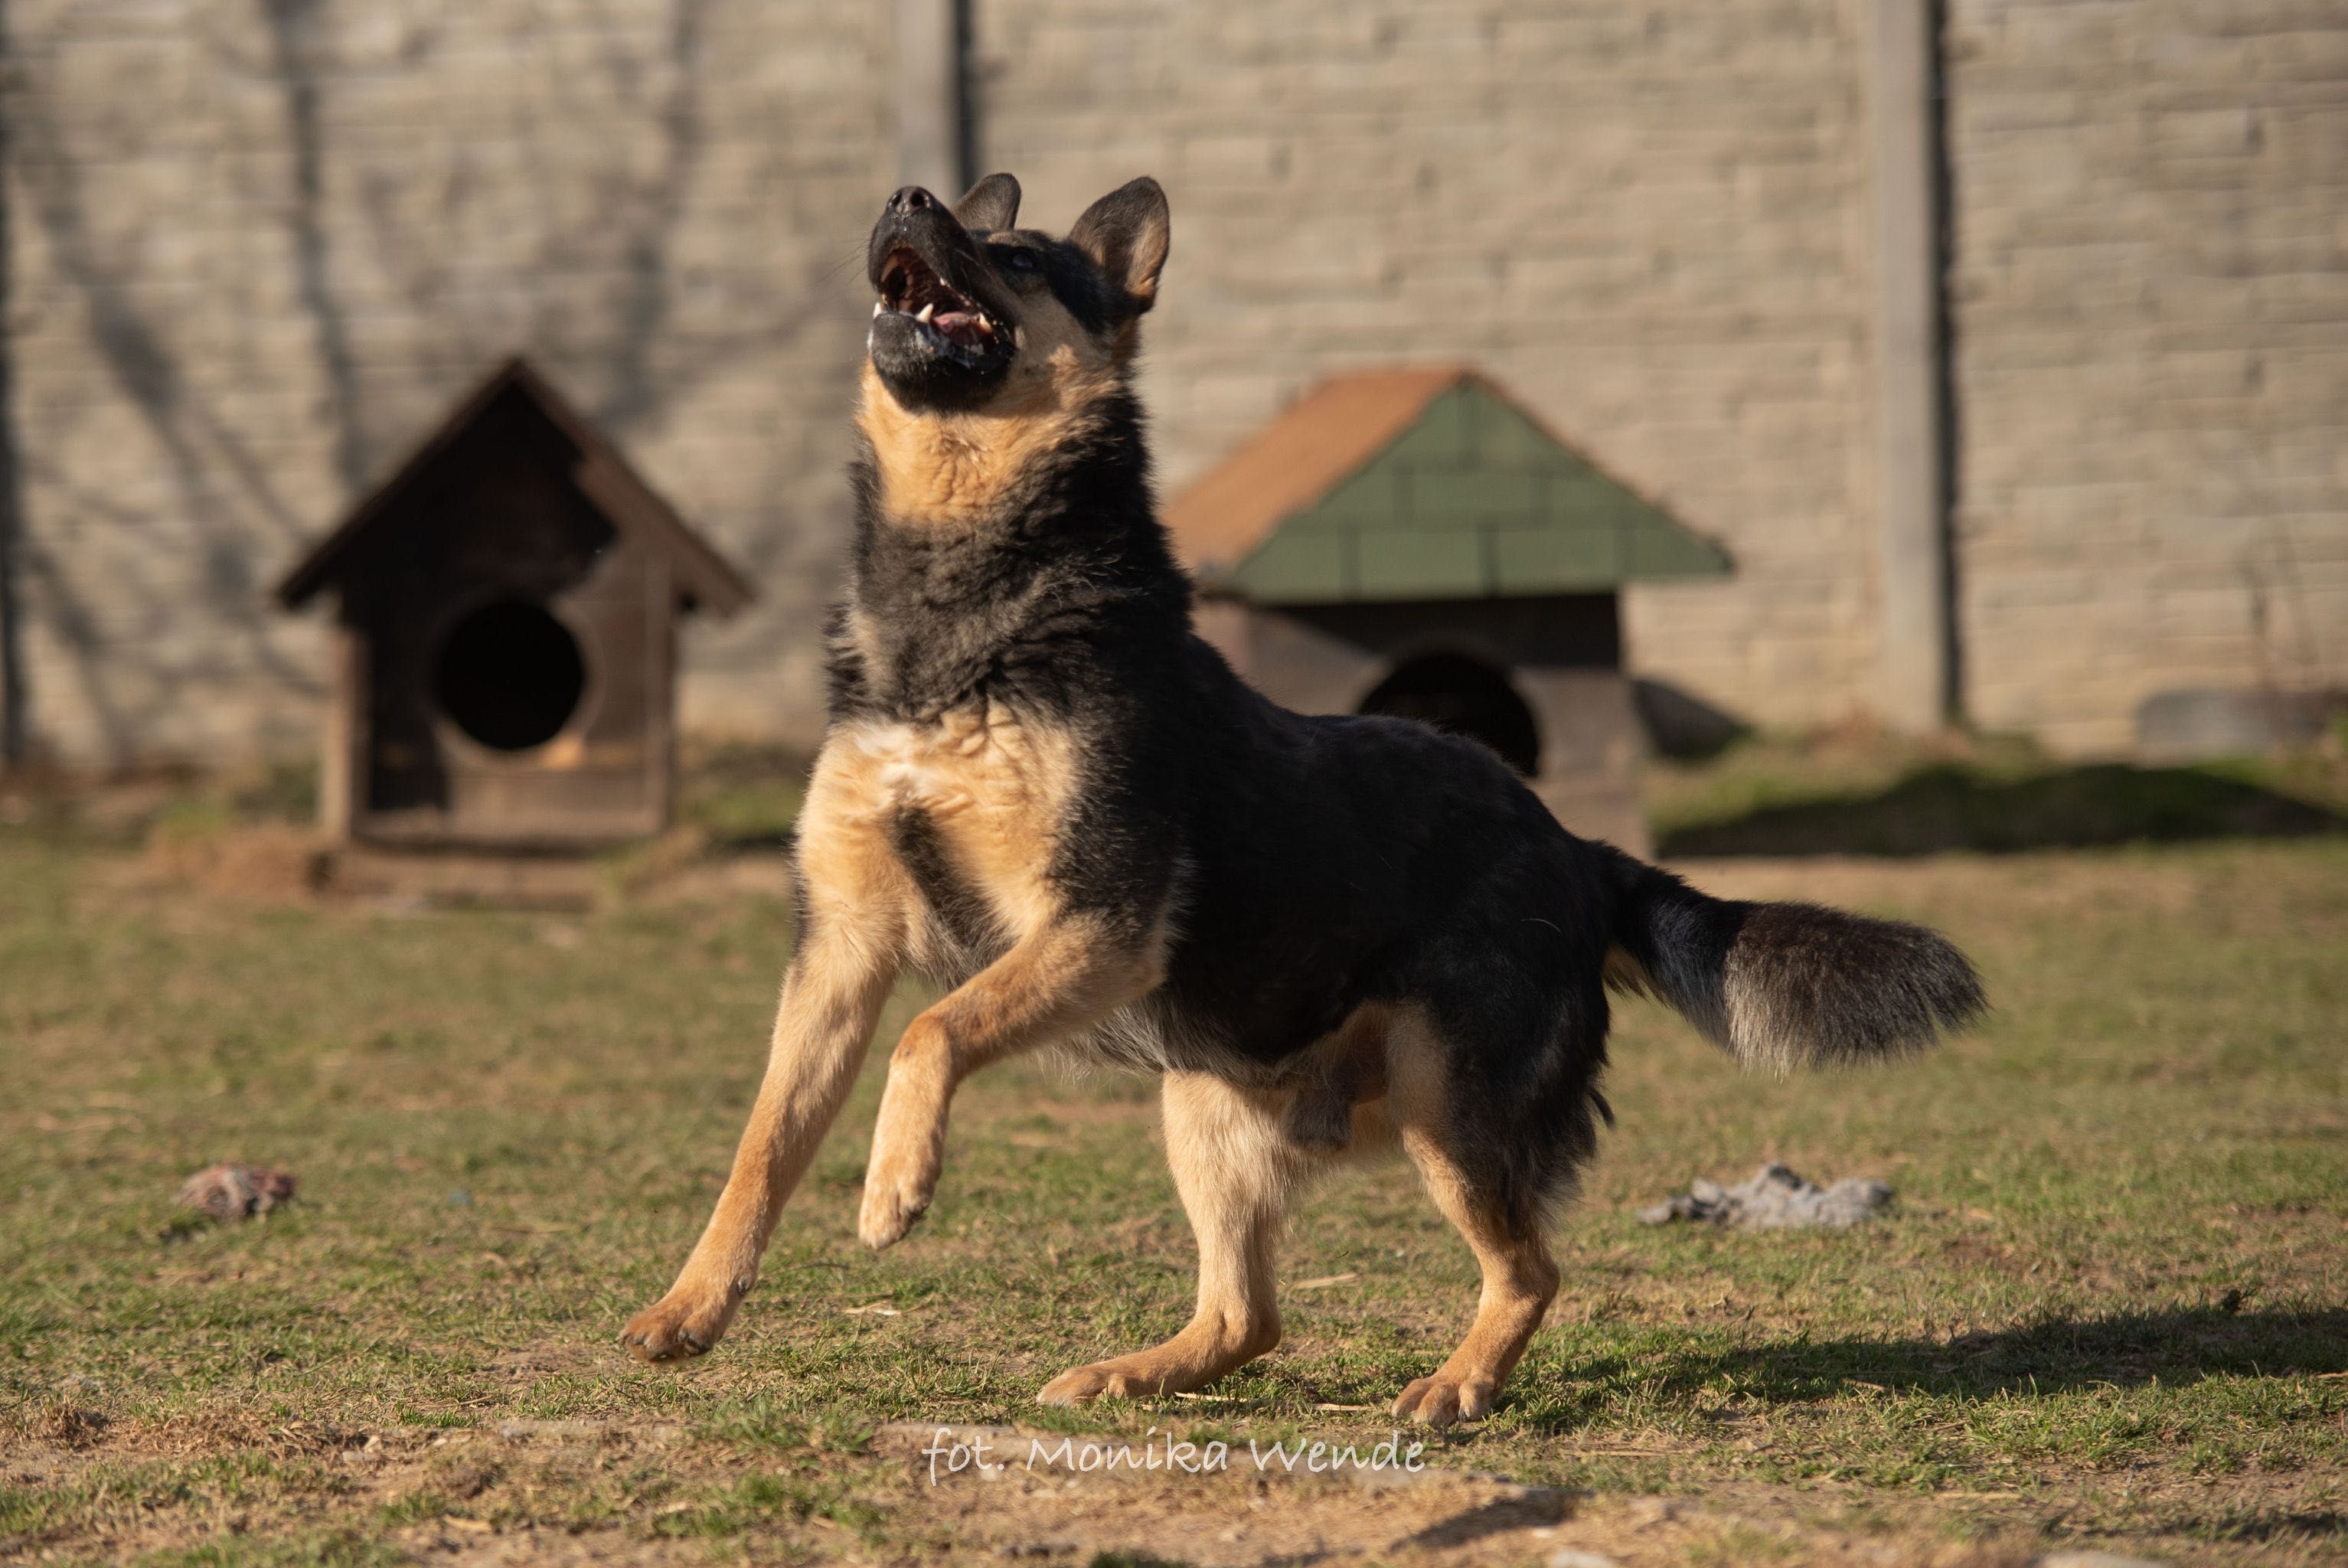 Szarik duży młody pies owczarek niemiecki szuka kochającego domu